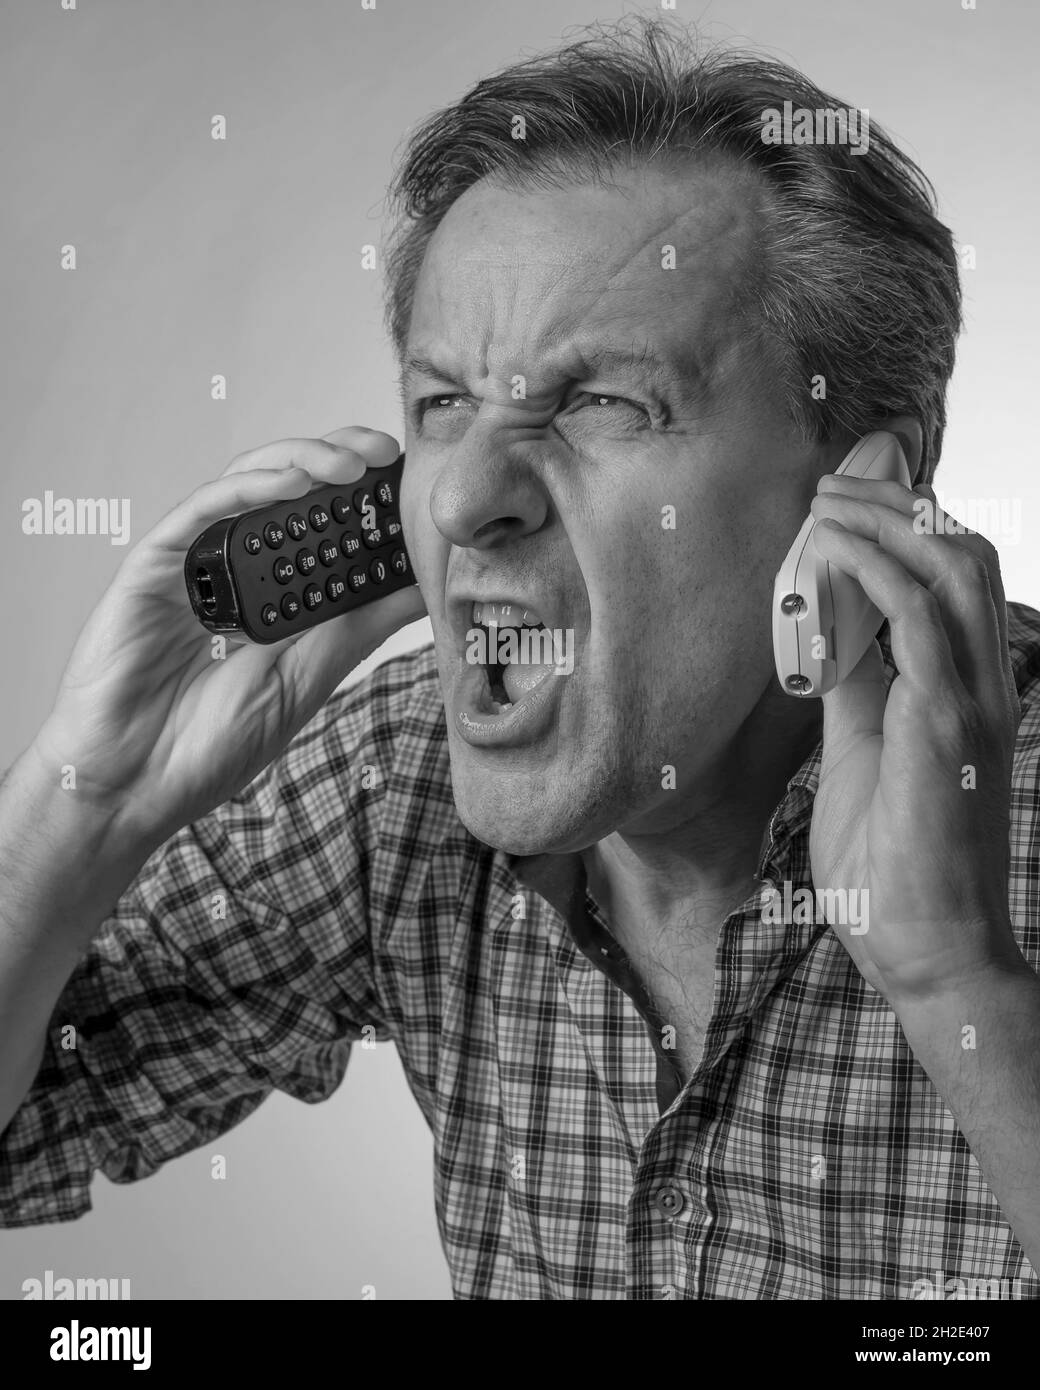 Ein weißer Mann brüllt, während er zwei schnurlose Telefone hält, mit einem Ausdruck von großem Stress, in Schwarz und Weiß Stockfoto